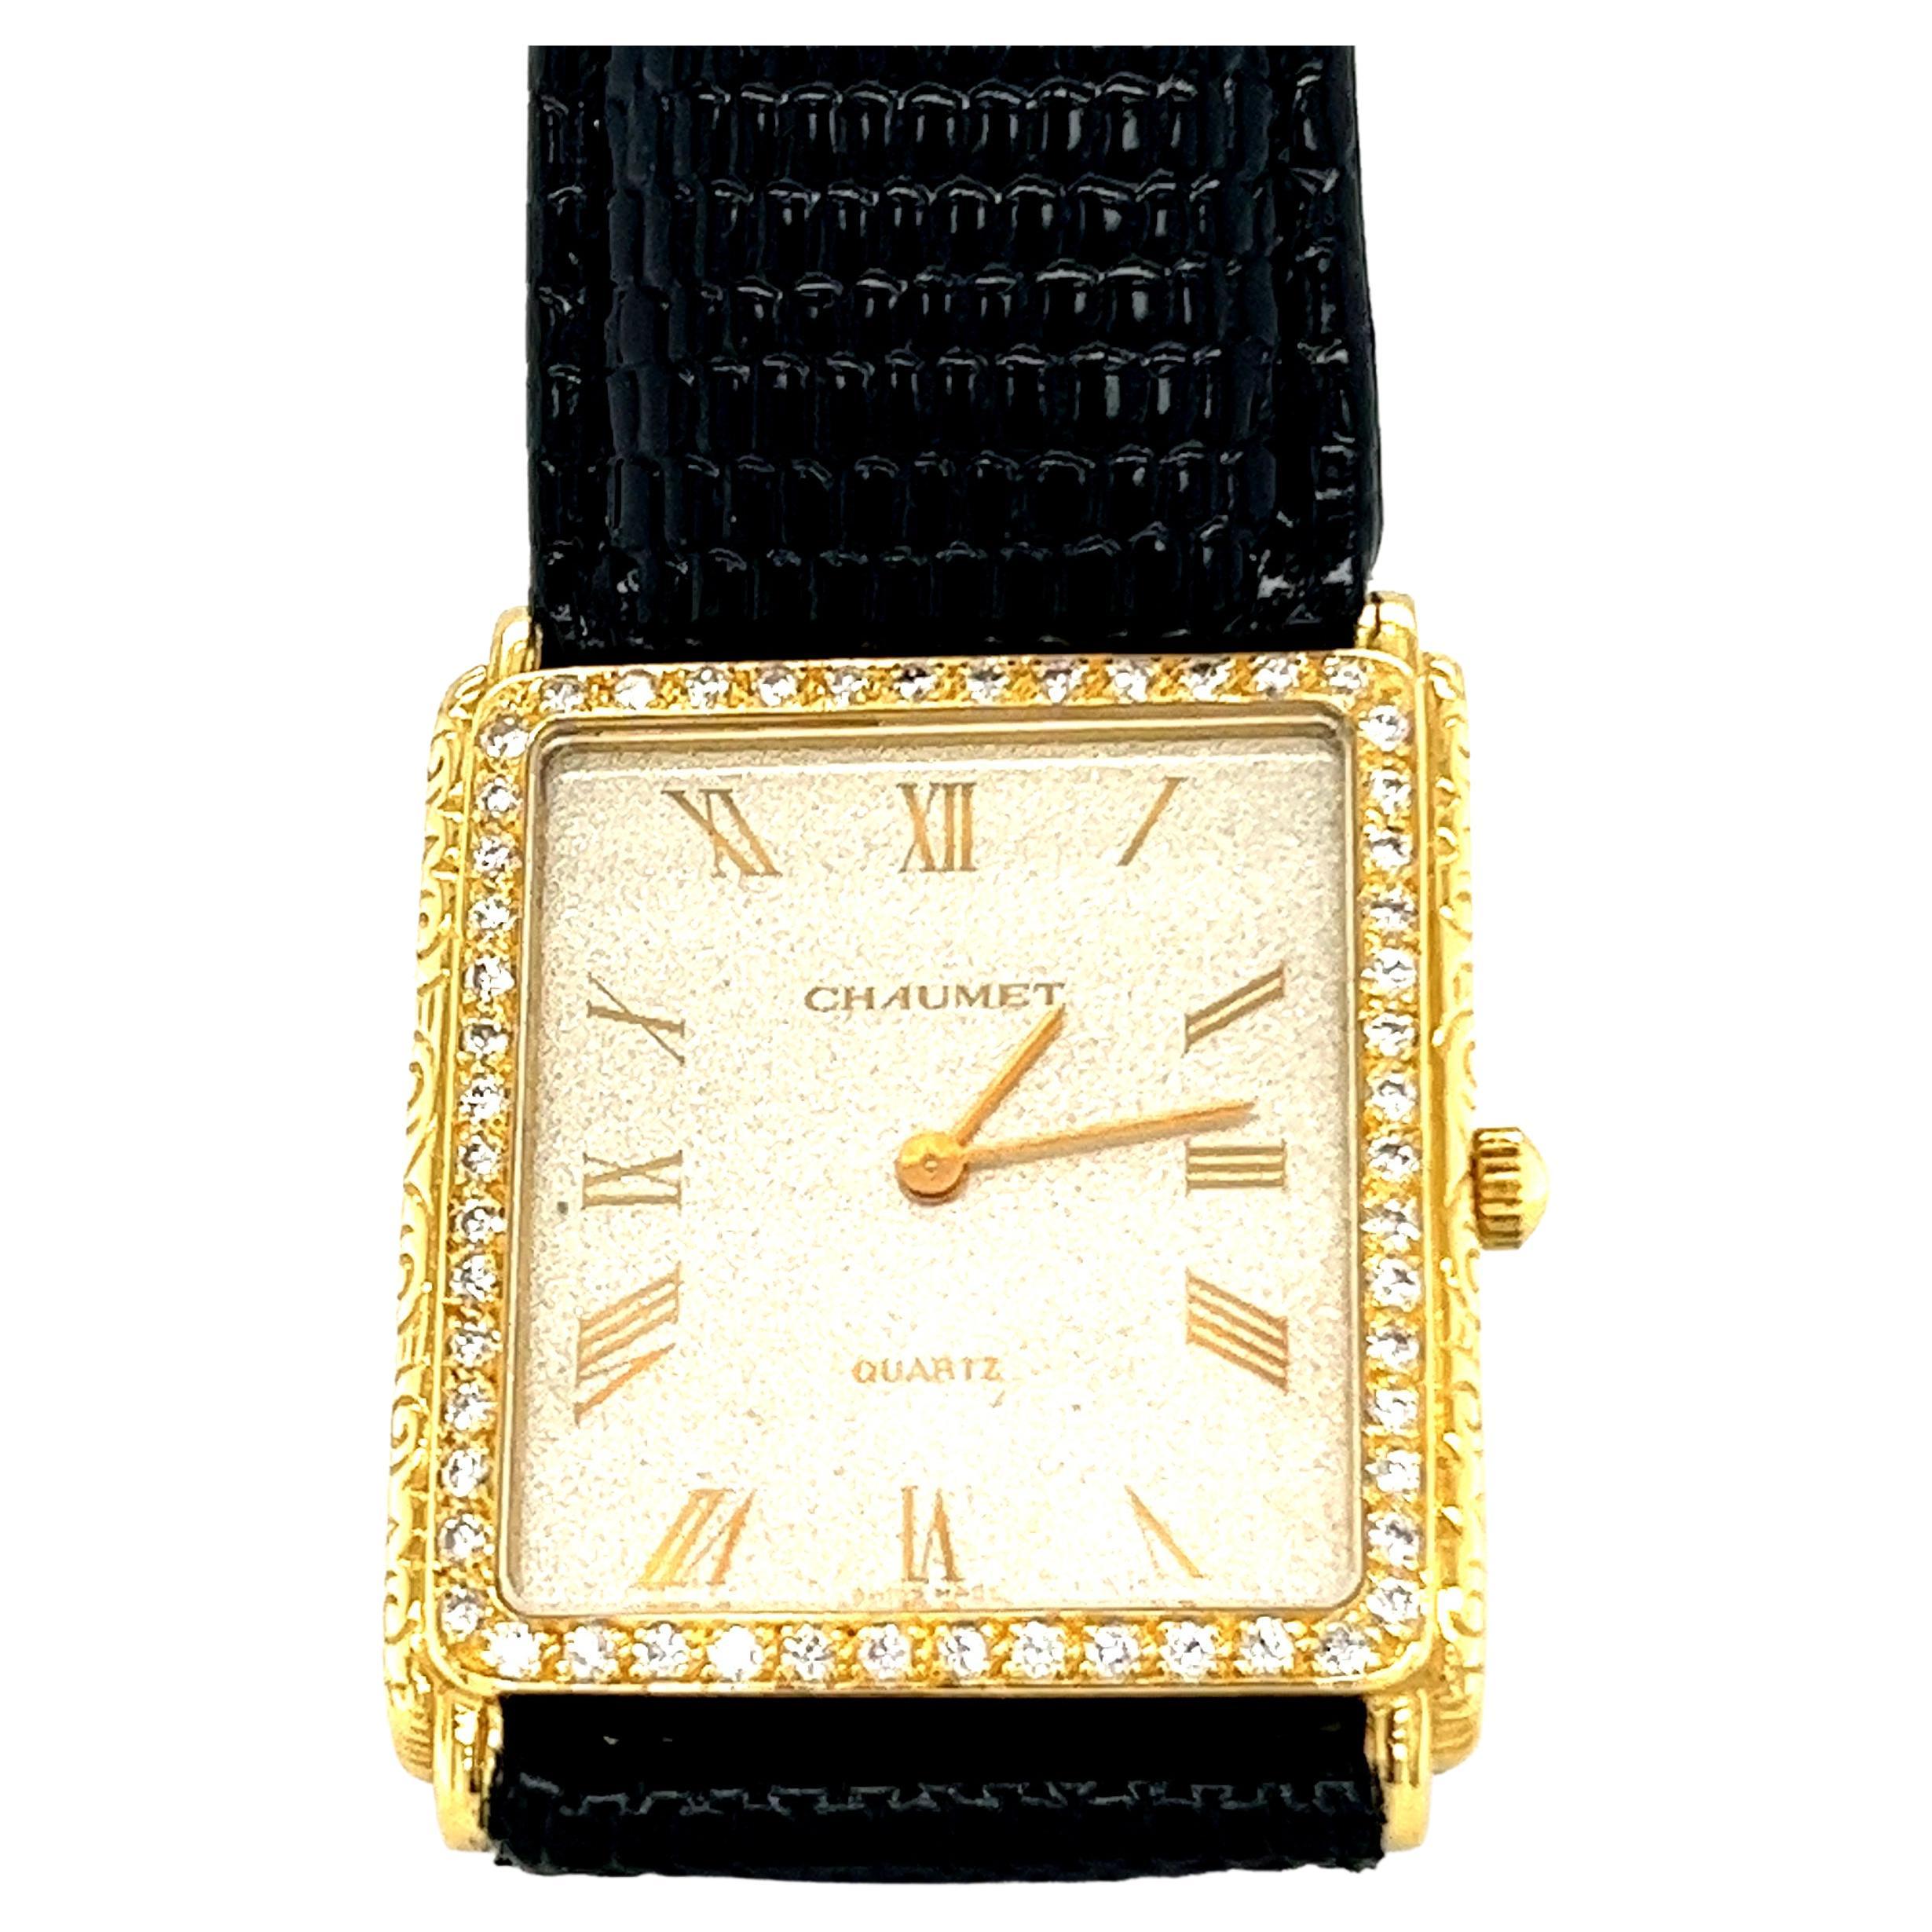 Classique et élégante montre-bracelet pour femme en or jaune 18 carats et diamants de la maison française Chaumet.

Montre-bracelet de dame à mouvement à quartz présentant un boîtier rectangulaire en or jaune 18 carats, gravé latéralement d'un motif